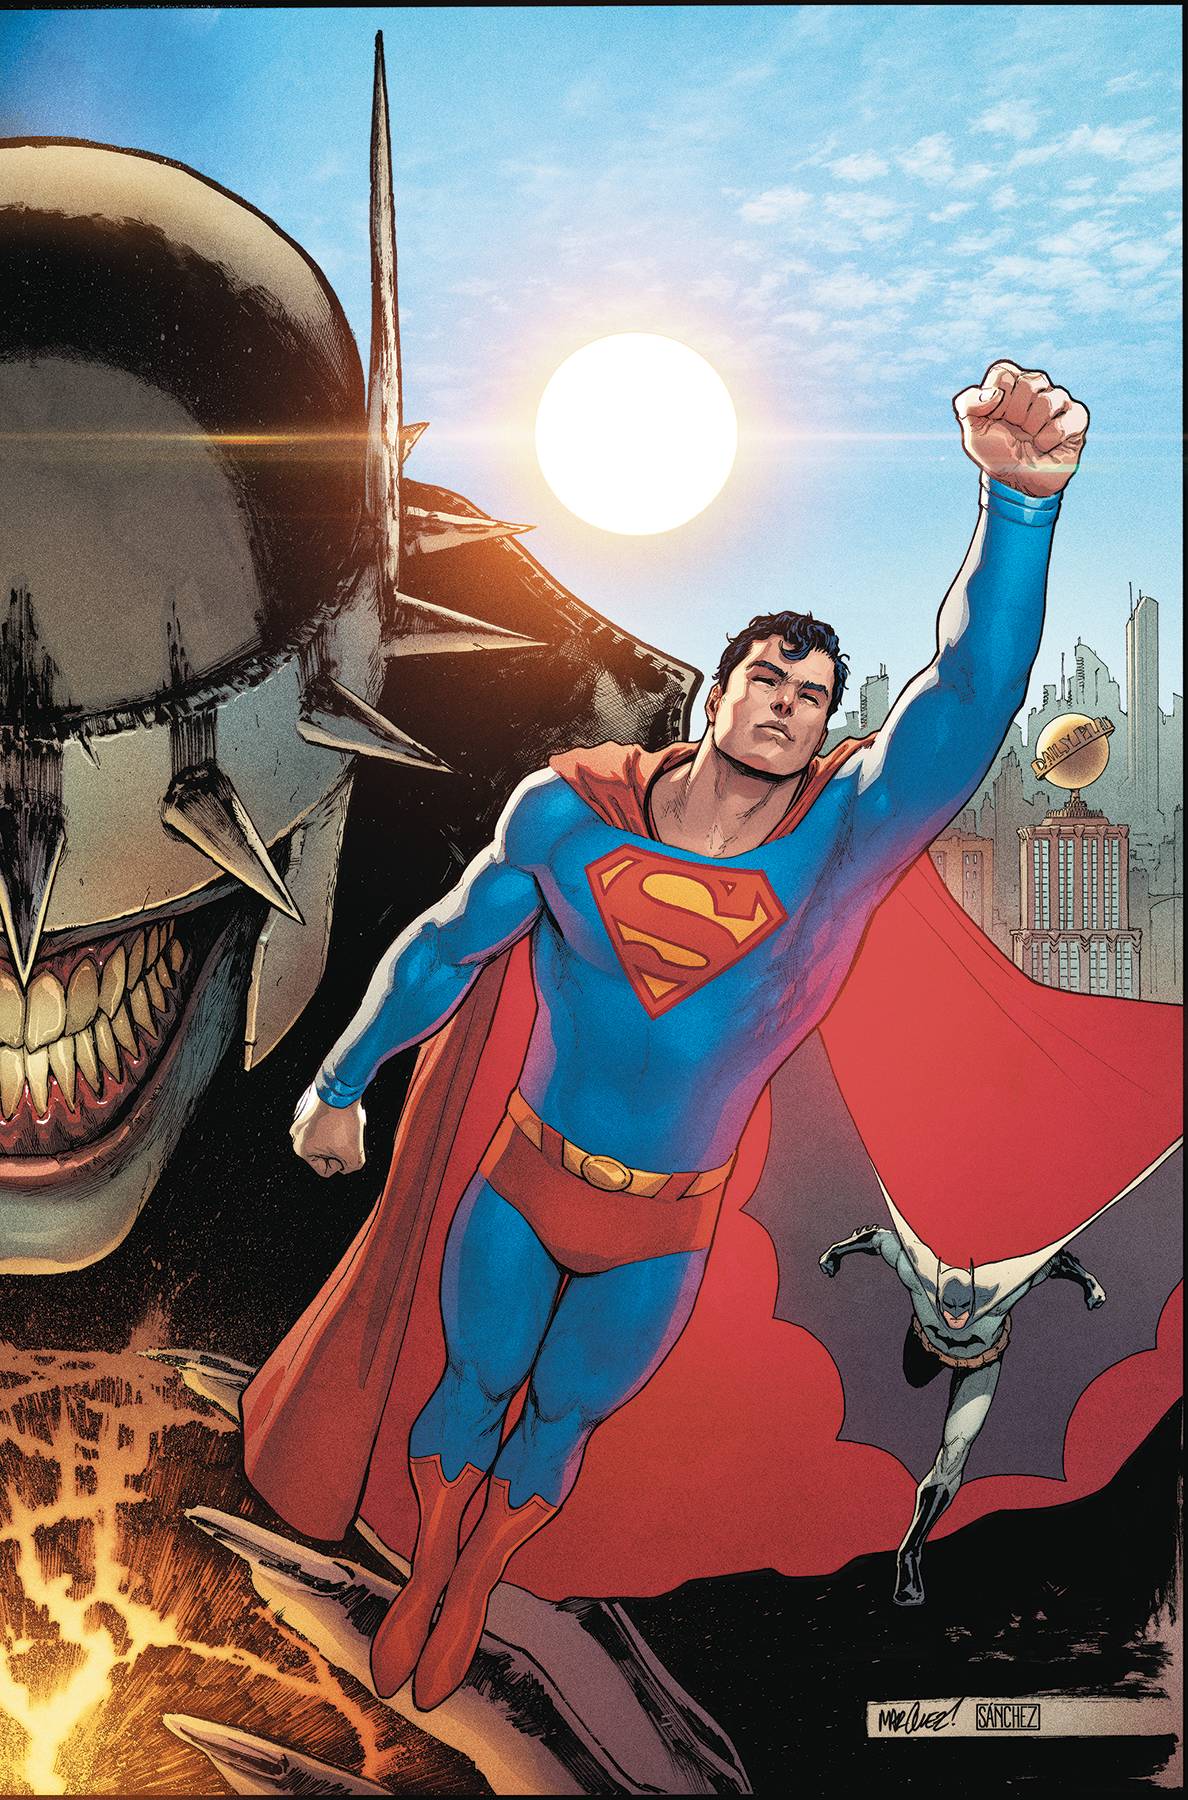 BATMAN SUPERMAN #1 SUPERMAN COVER 08/28/19 FOC 08/05/19